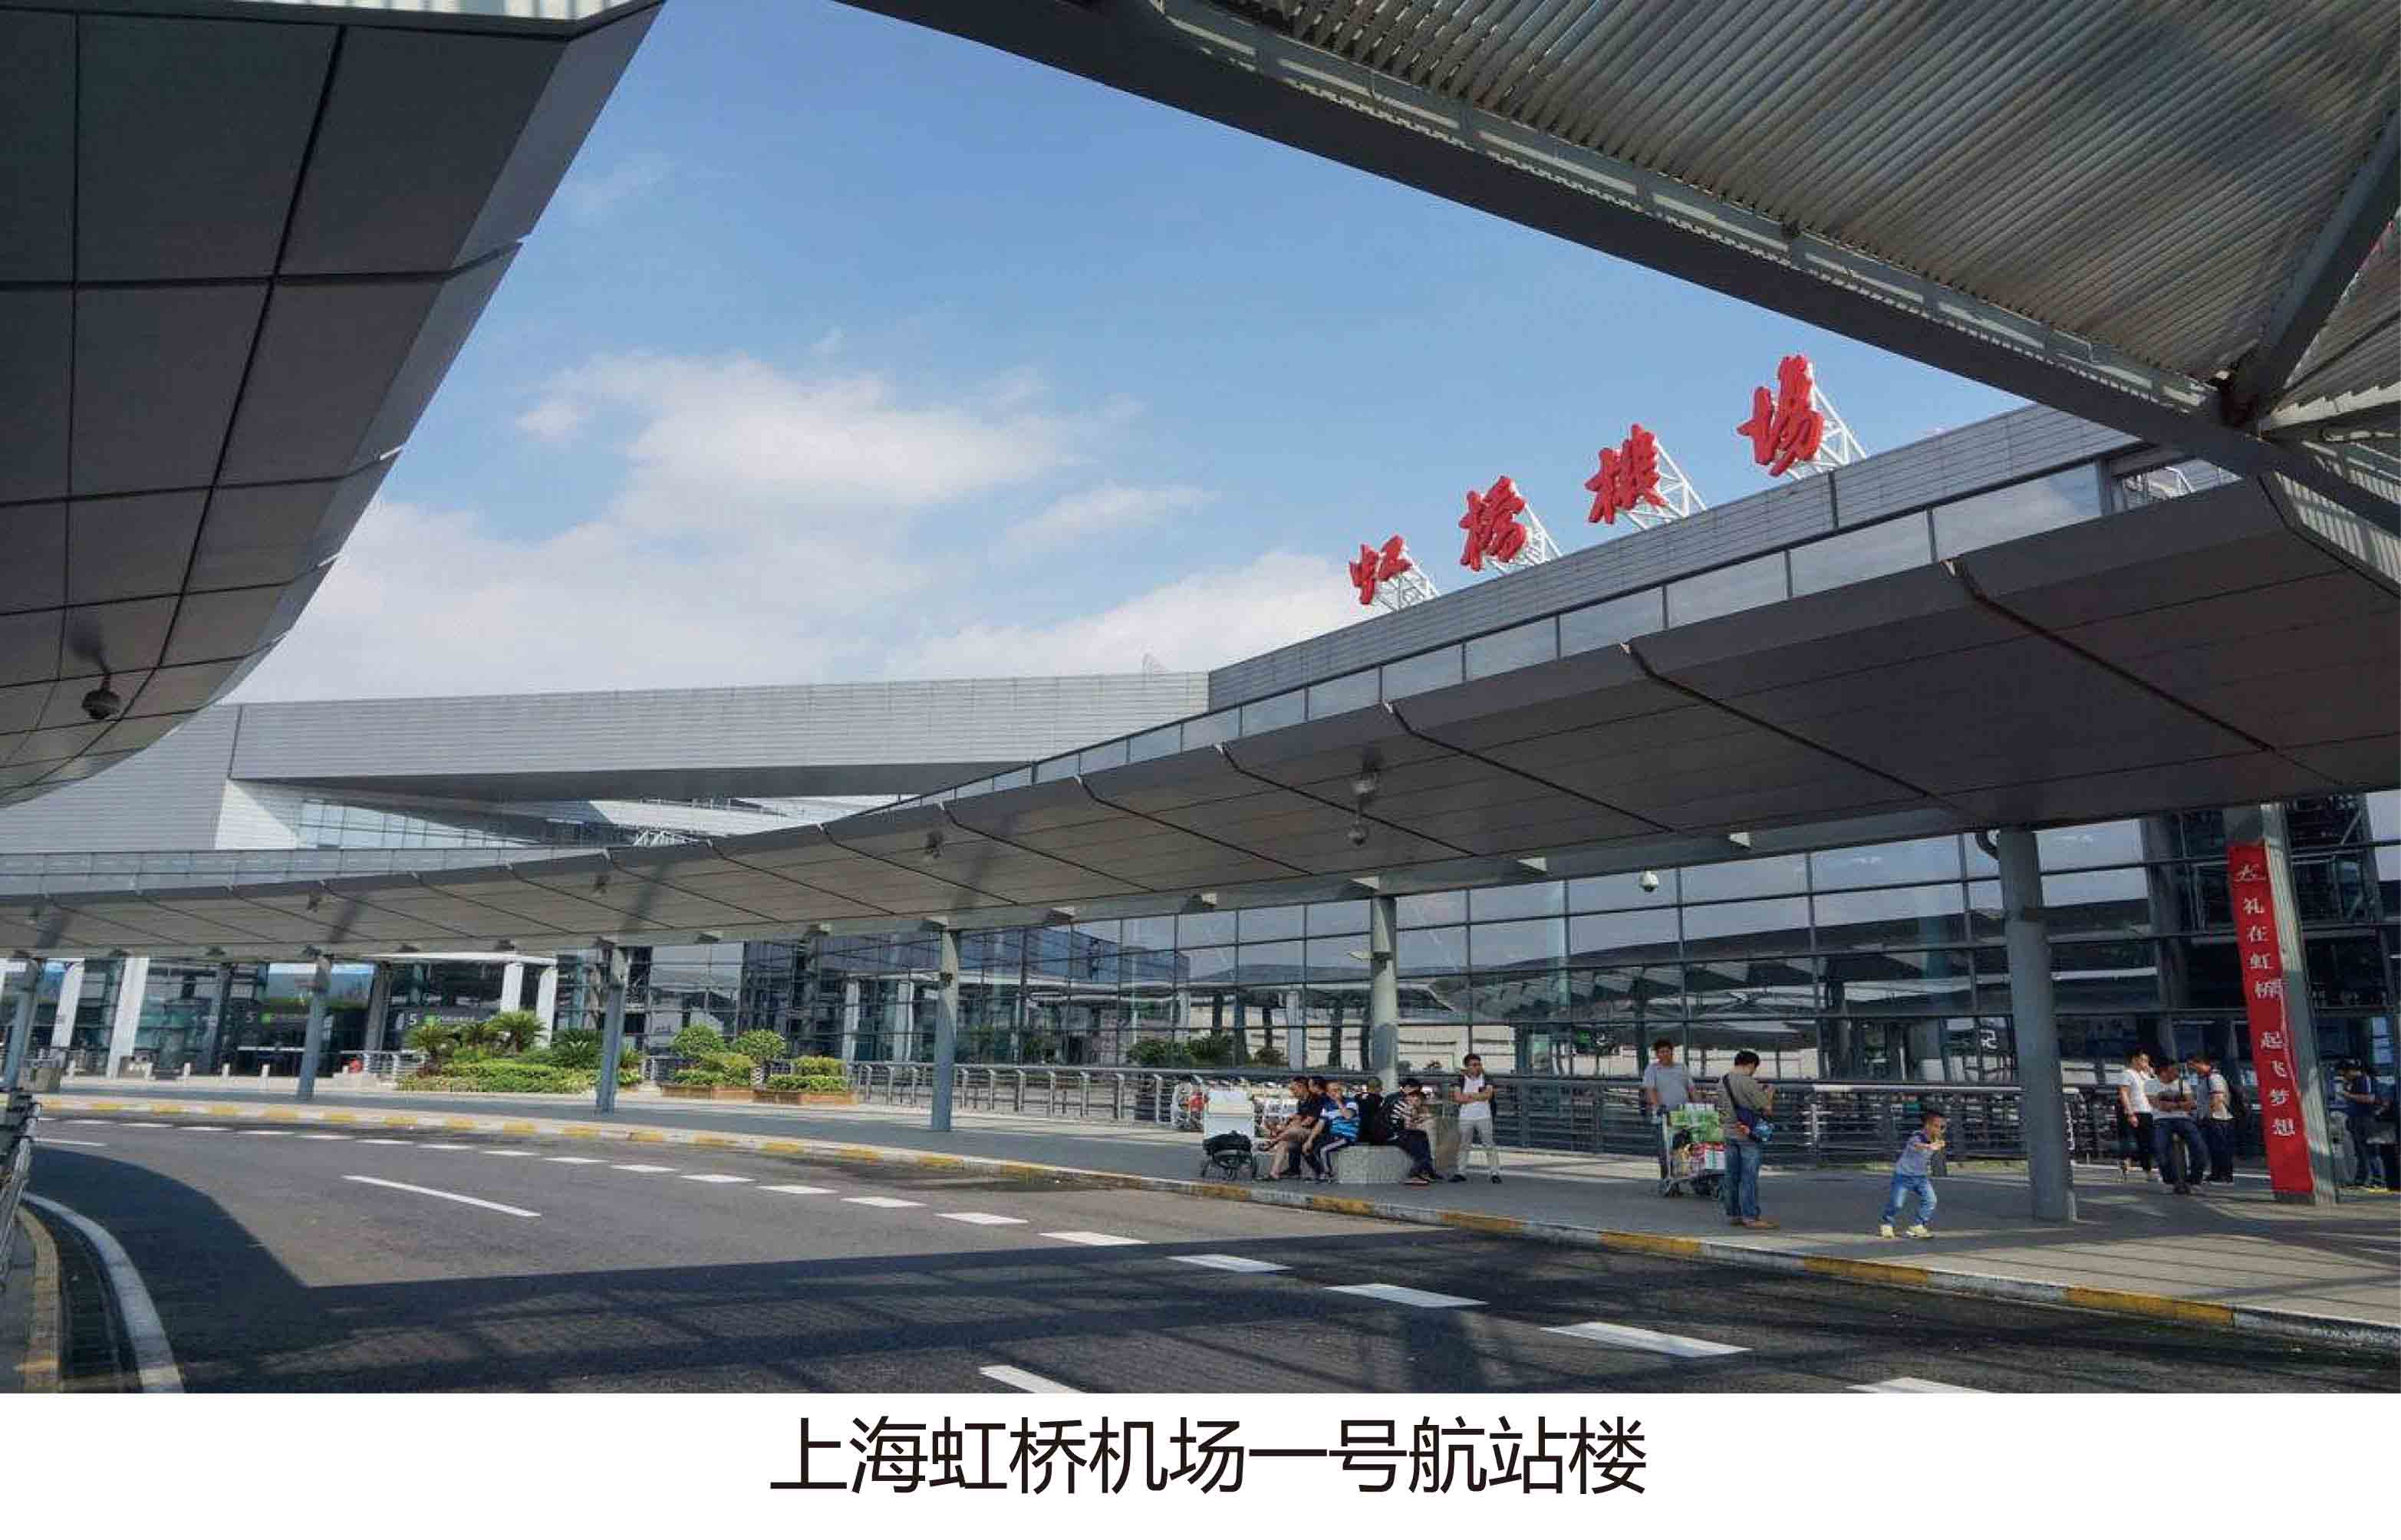 上海虹桥机场一号航站